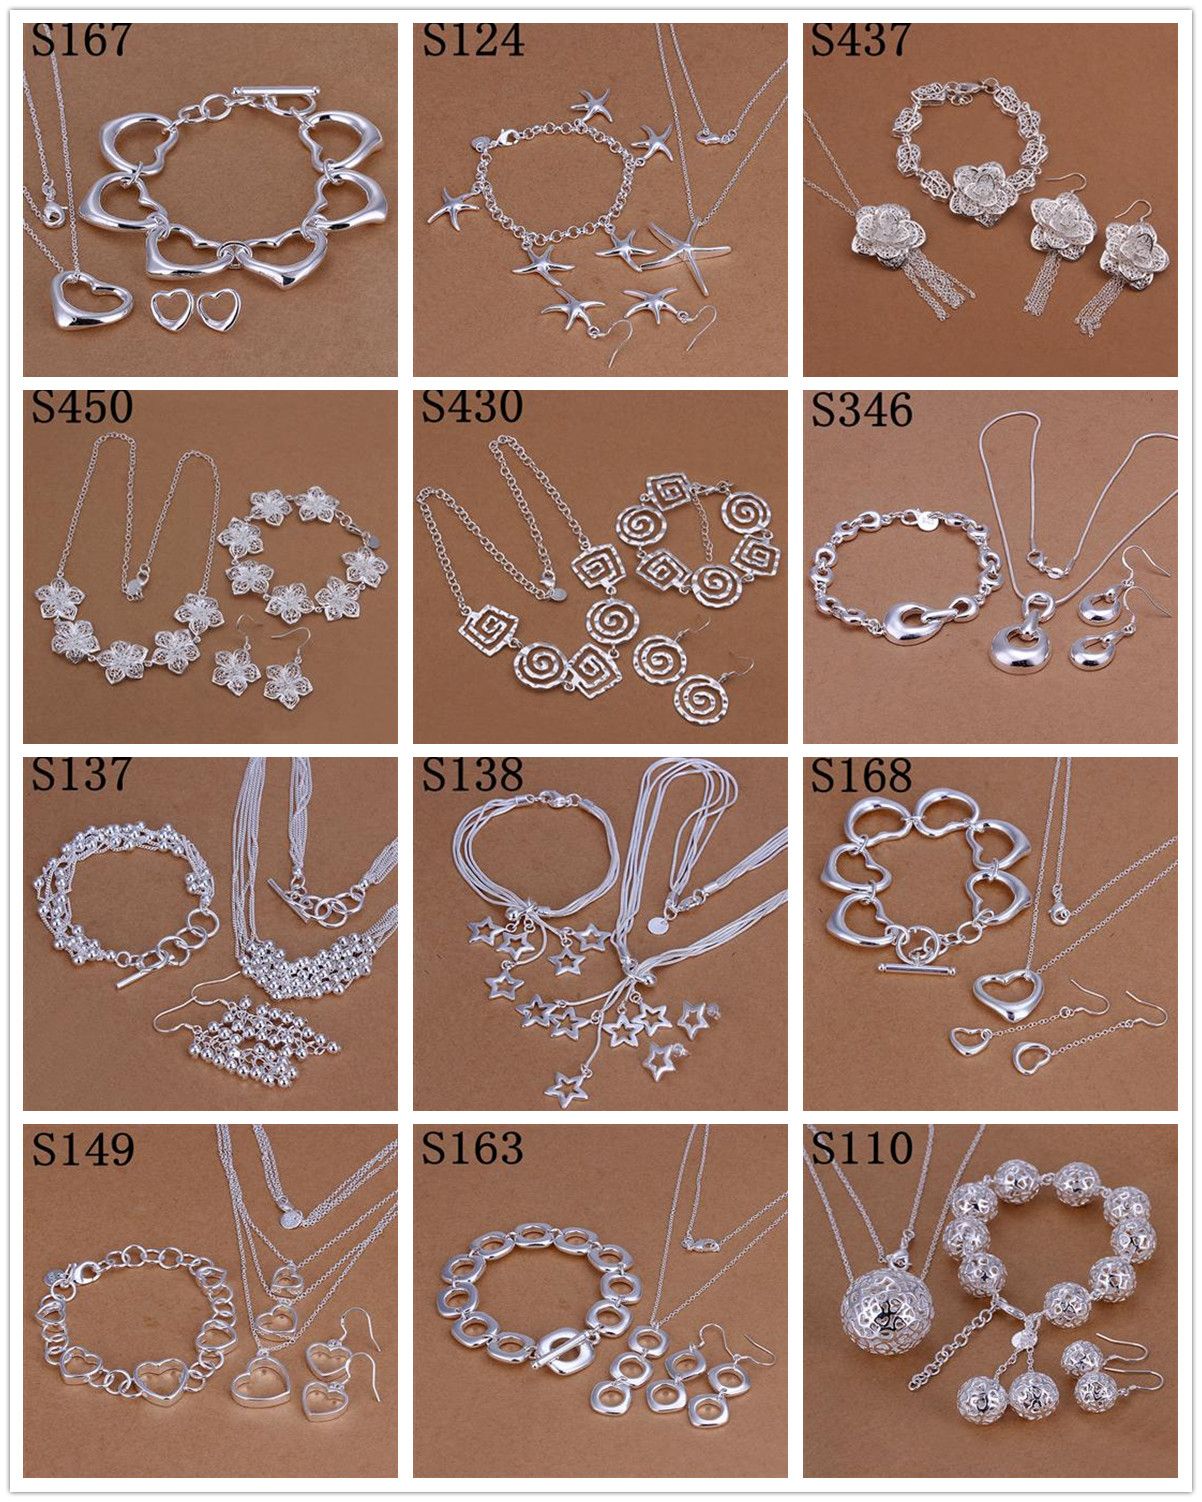 Nuevo diseño orden mixto múltiples estilos múltiples pendientes de moda de plata esterlina 925 + pulsera + collar conjunto de joyas